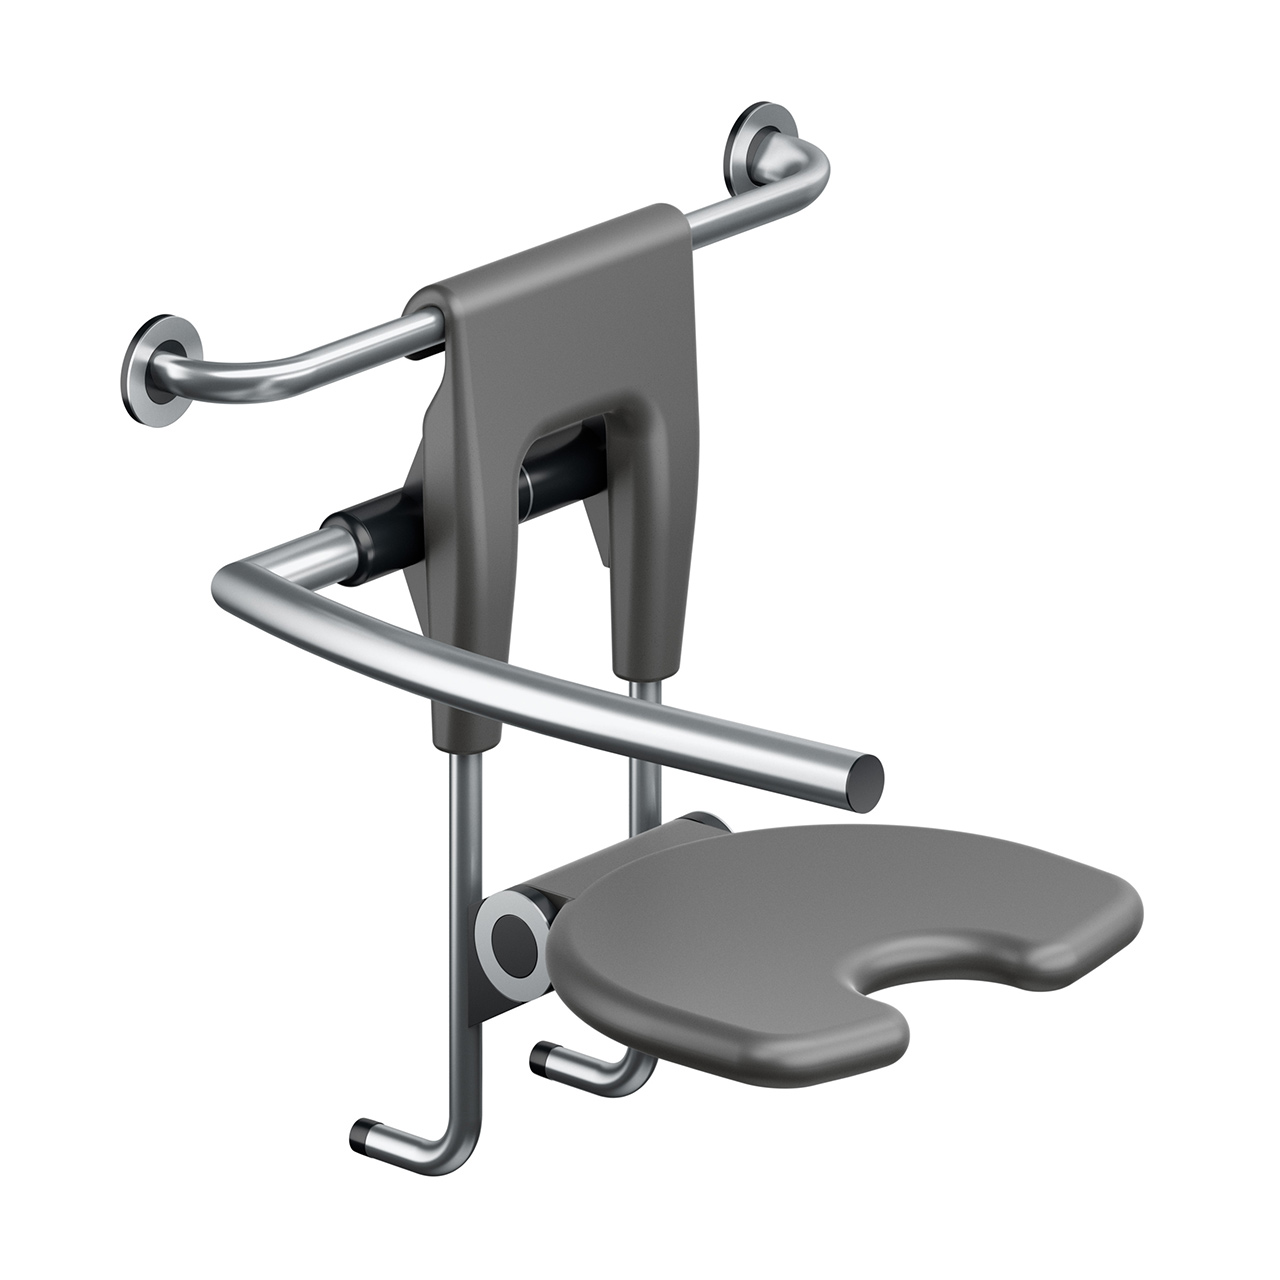 https://duschvorhang.de/media/image/14/8d/10/Duschklappsitz-Ruckenlehne-Armlehne-links-Shower-chair-armrest-left-backrest.jpg